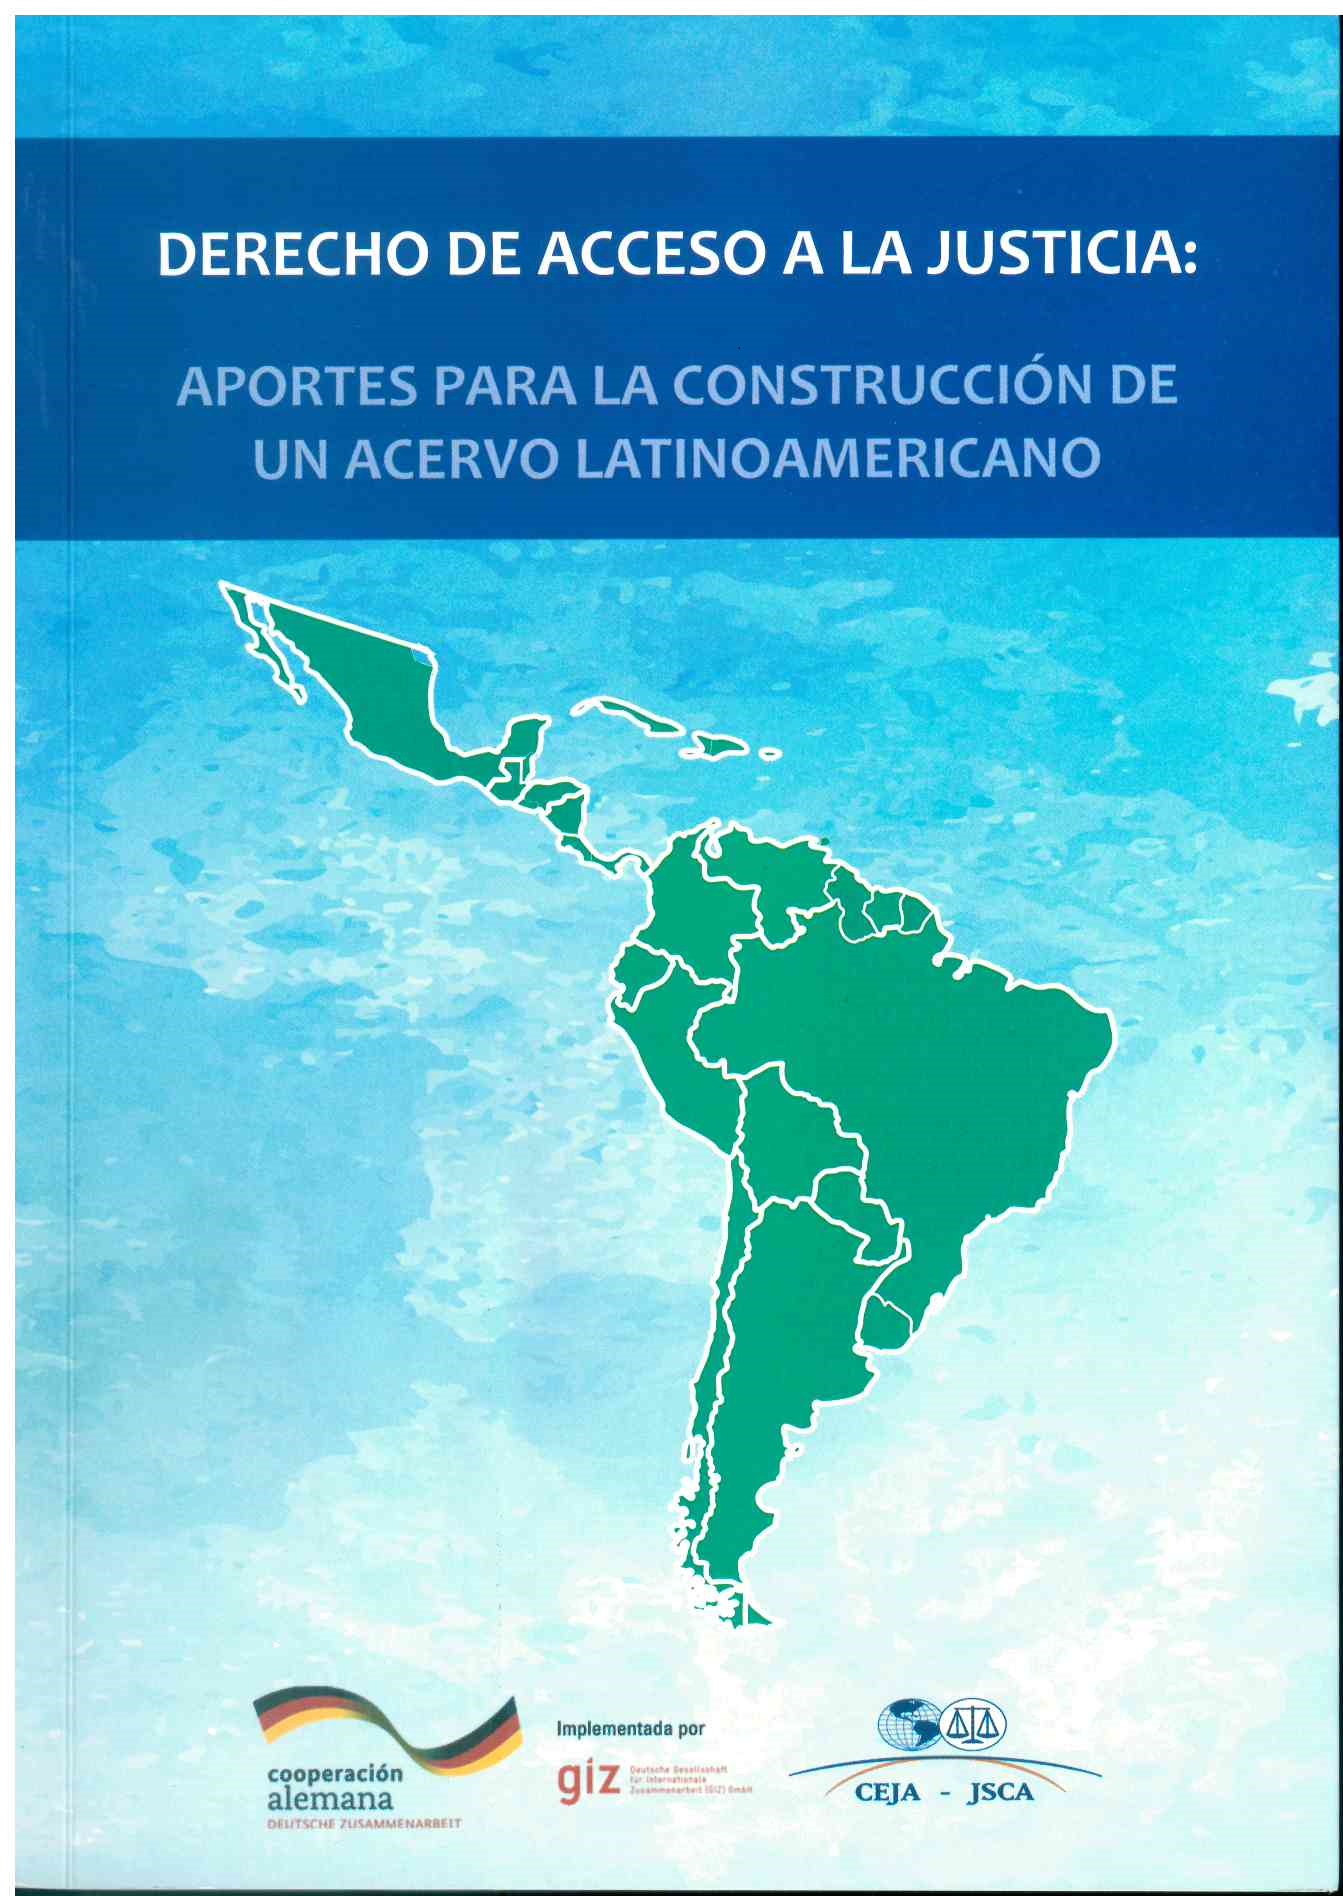 Derecho de acceso a la justicia: Aportes para la construccion de un acervo latinoamericano.